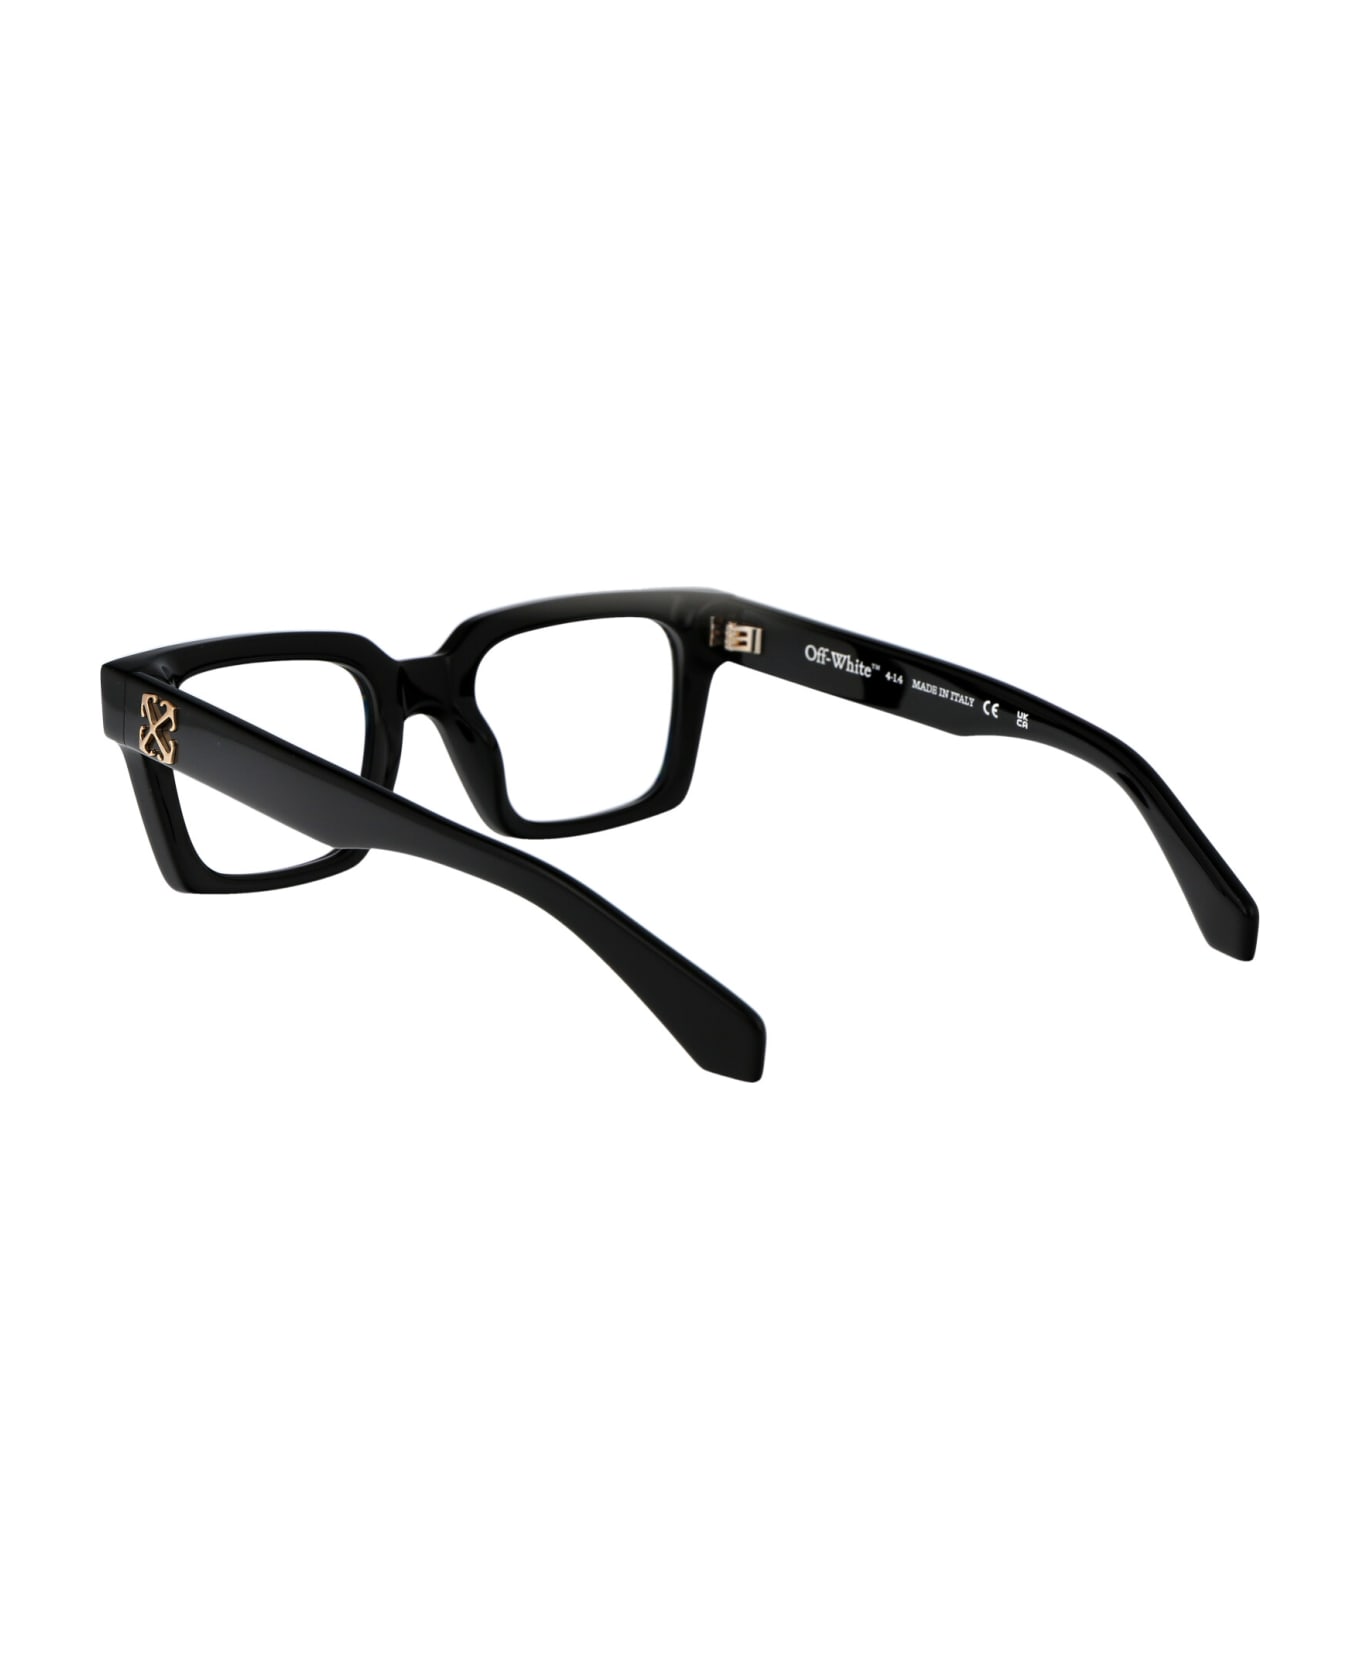 Off-White Optical Style 72 Glasses - 1000 BLACK アイウェア